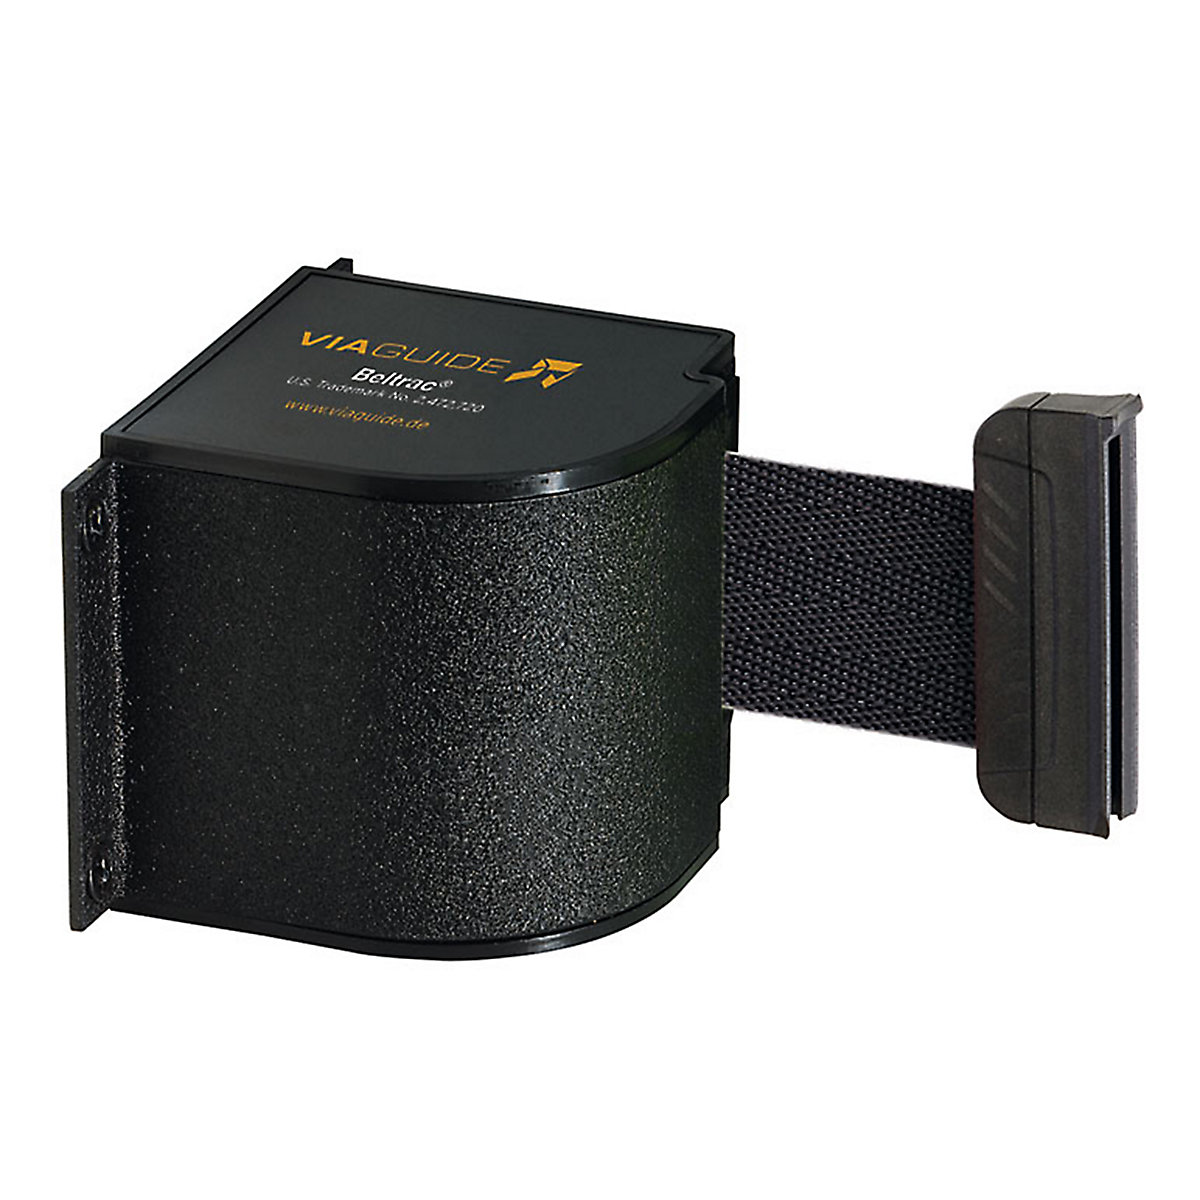 Cassetta per nastro Wall Mount, estrazione nastro max 5400 mm, nastro nero-5